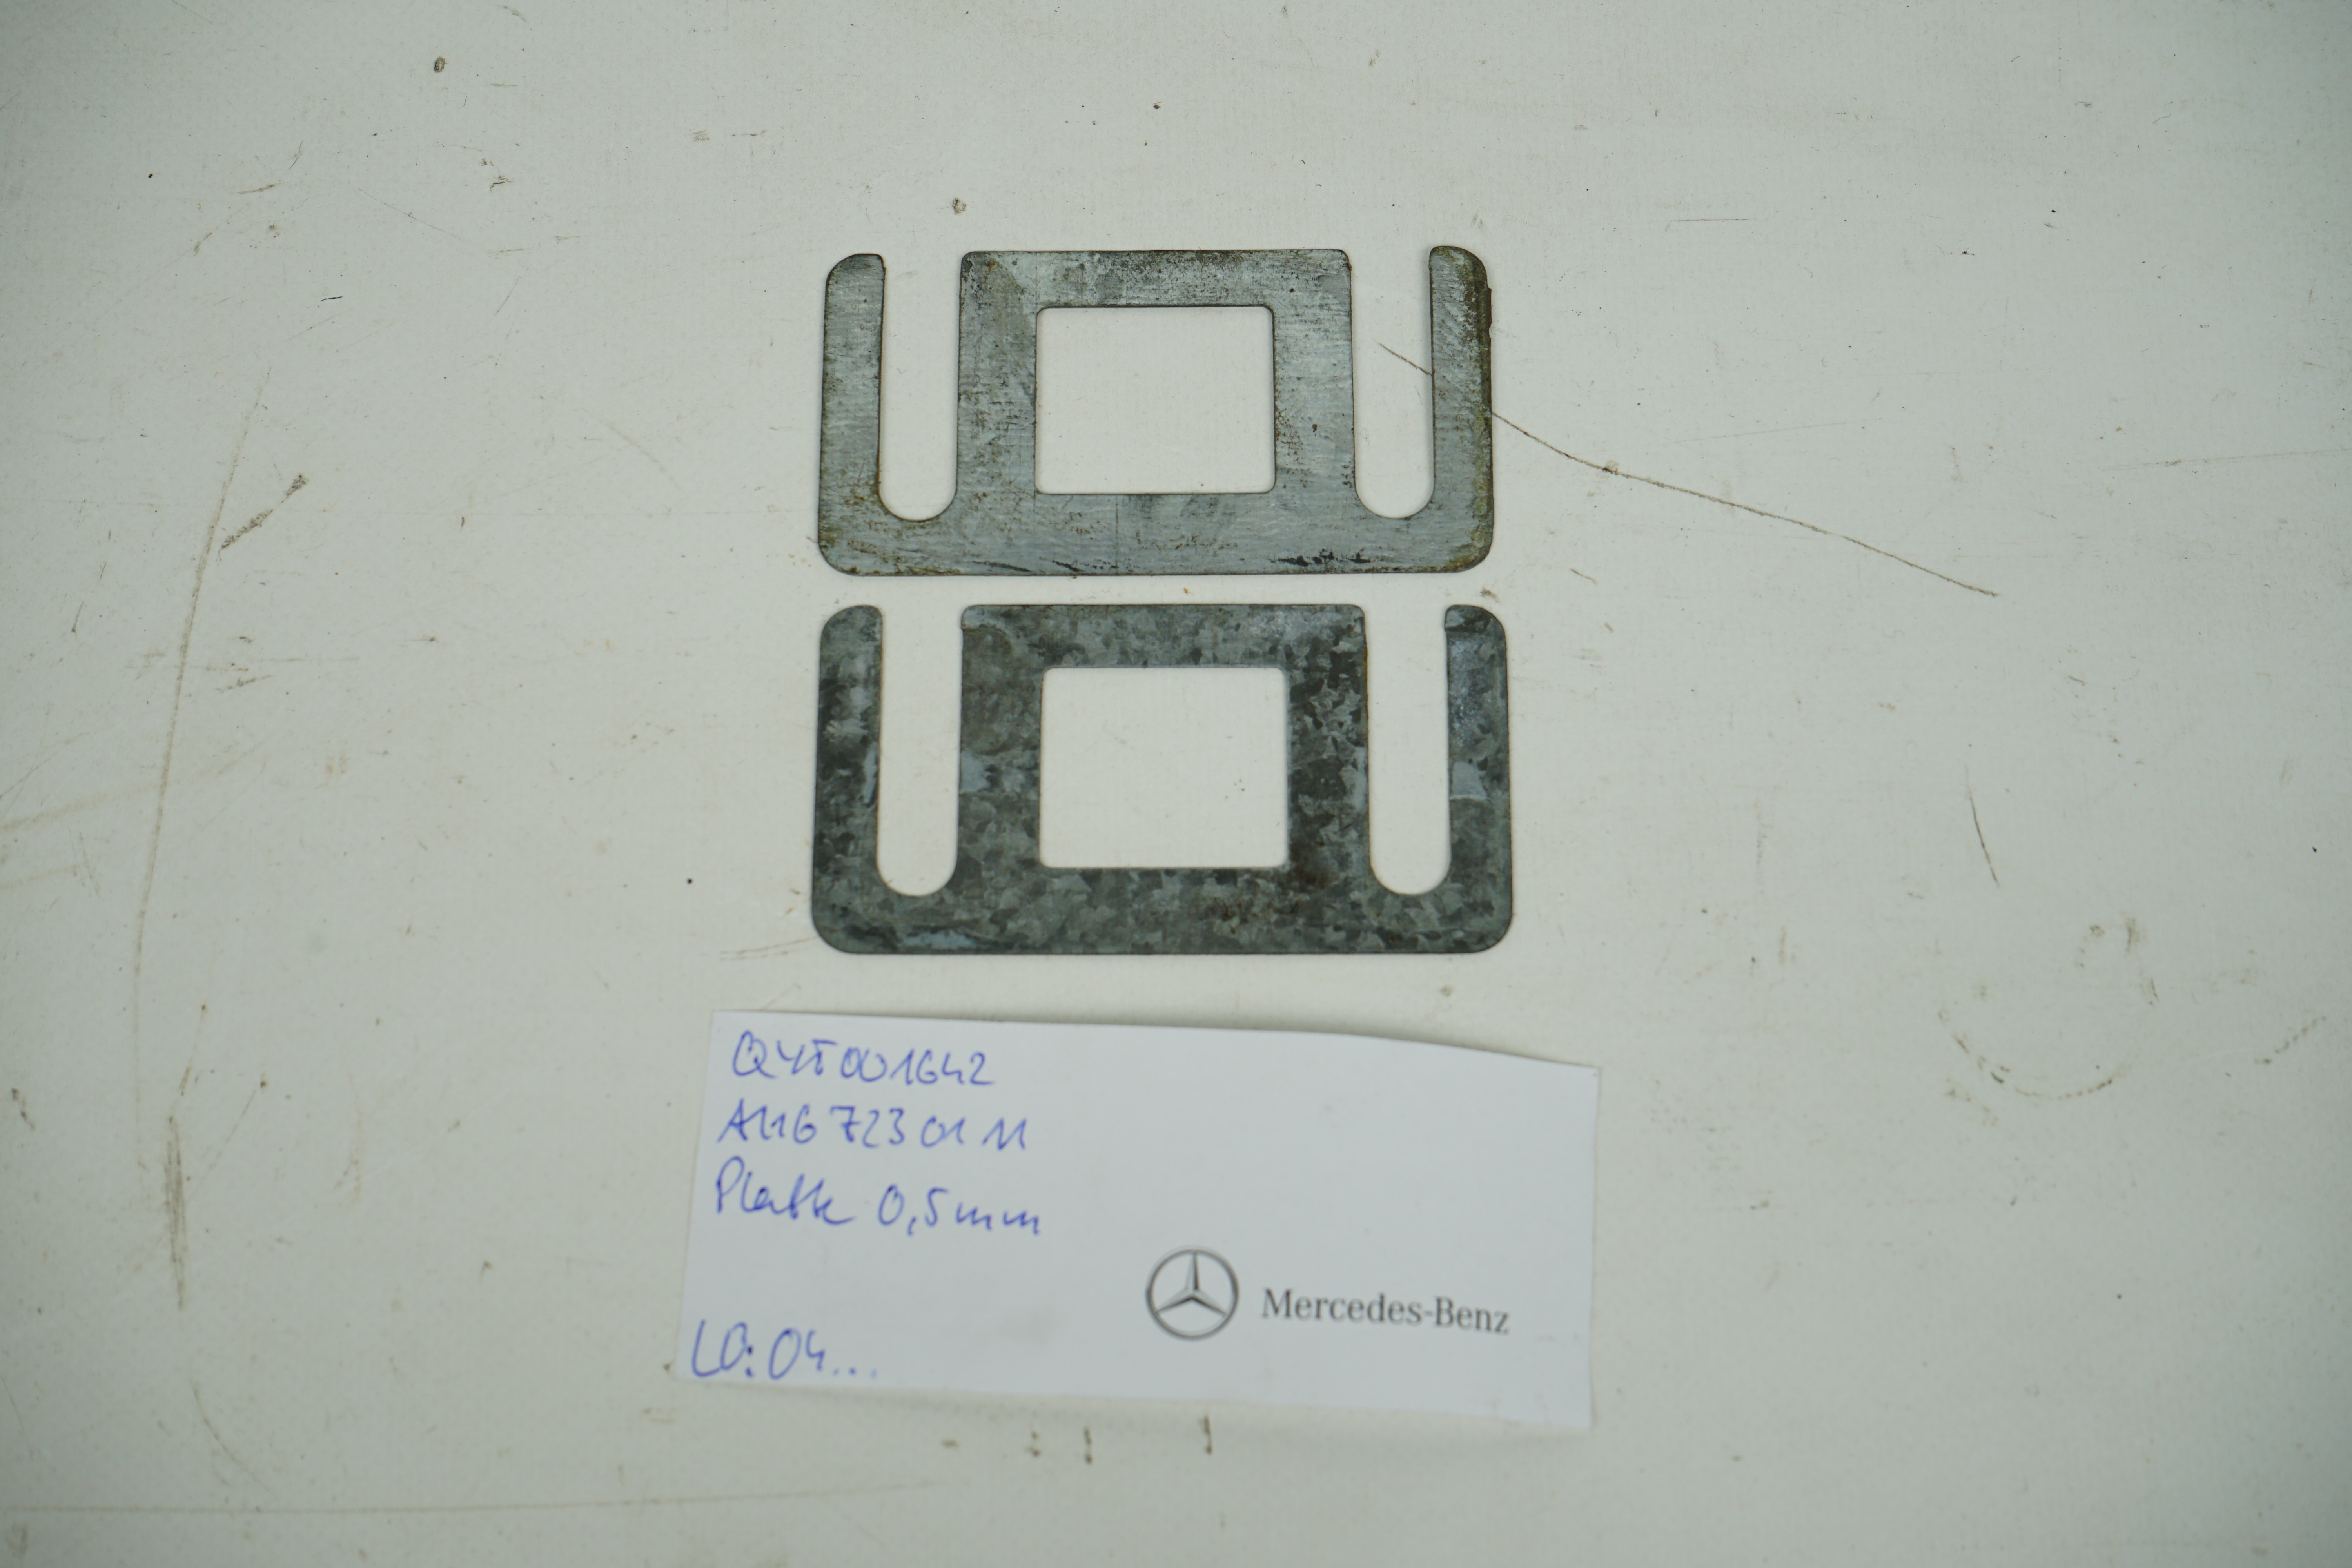  Unterlegplatte 0,5mm Ausgleichplatte Schließöse Mercedes-Benz C107 R107 W116 W123 W126 Ausgleich Beilage Zapfenschloss Tür A1167230211